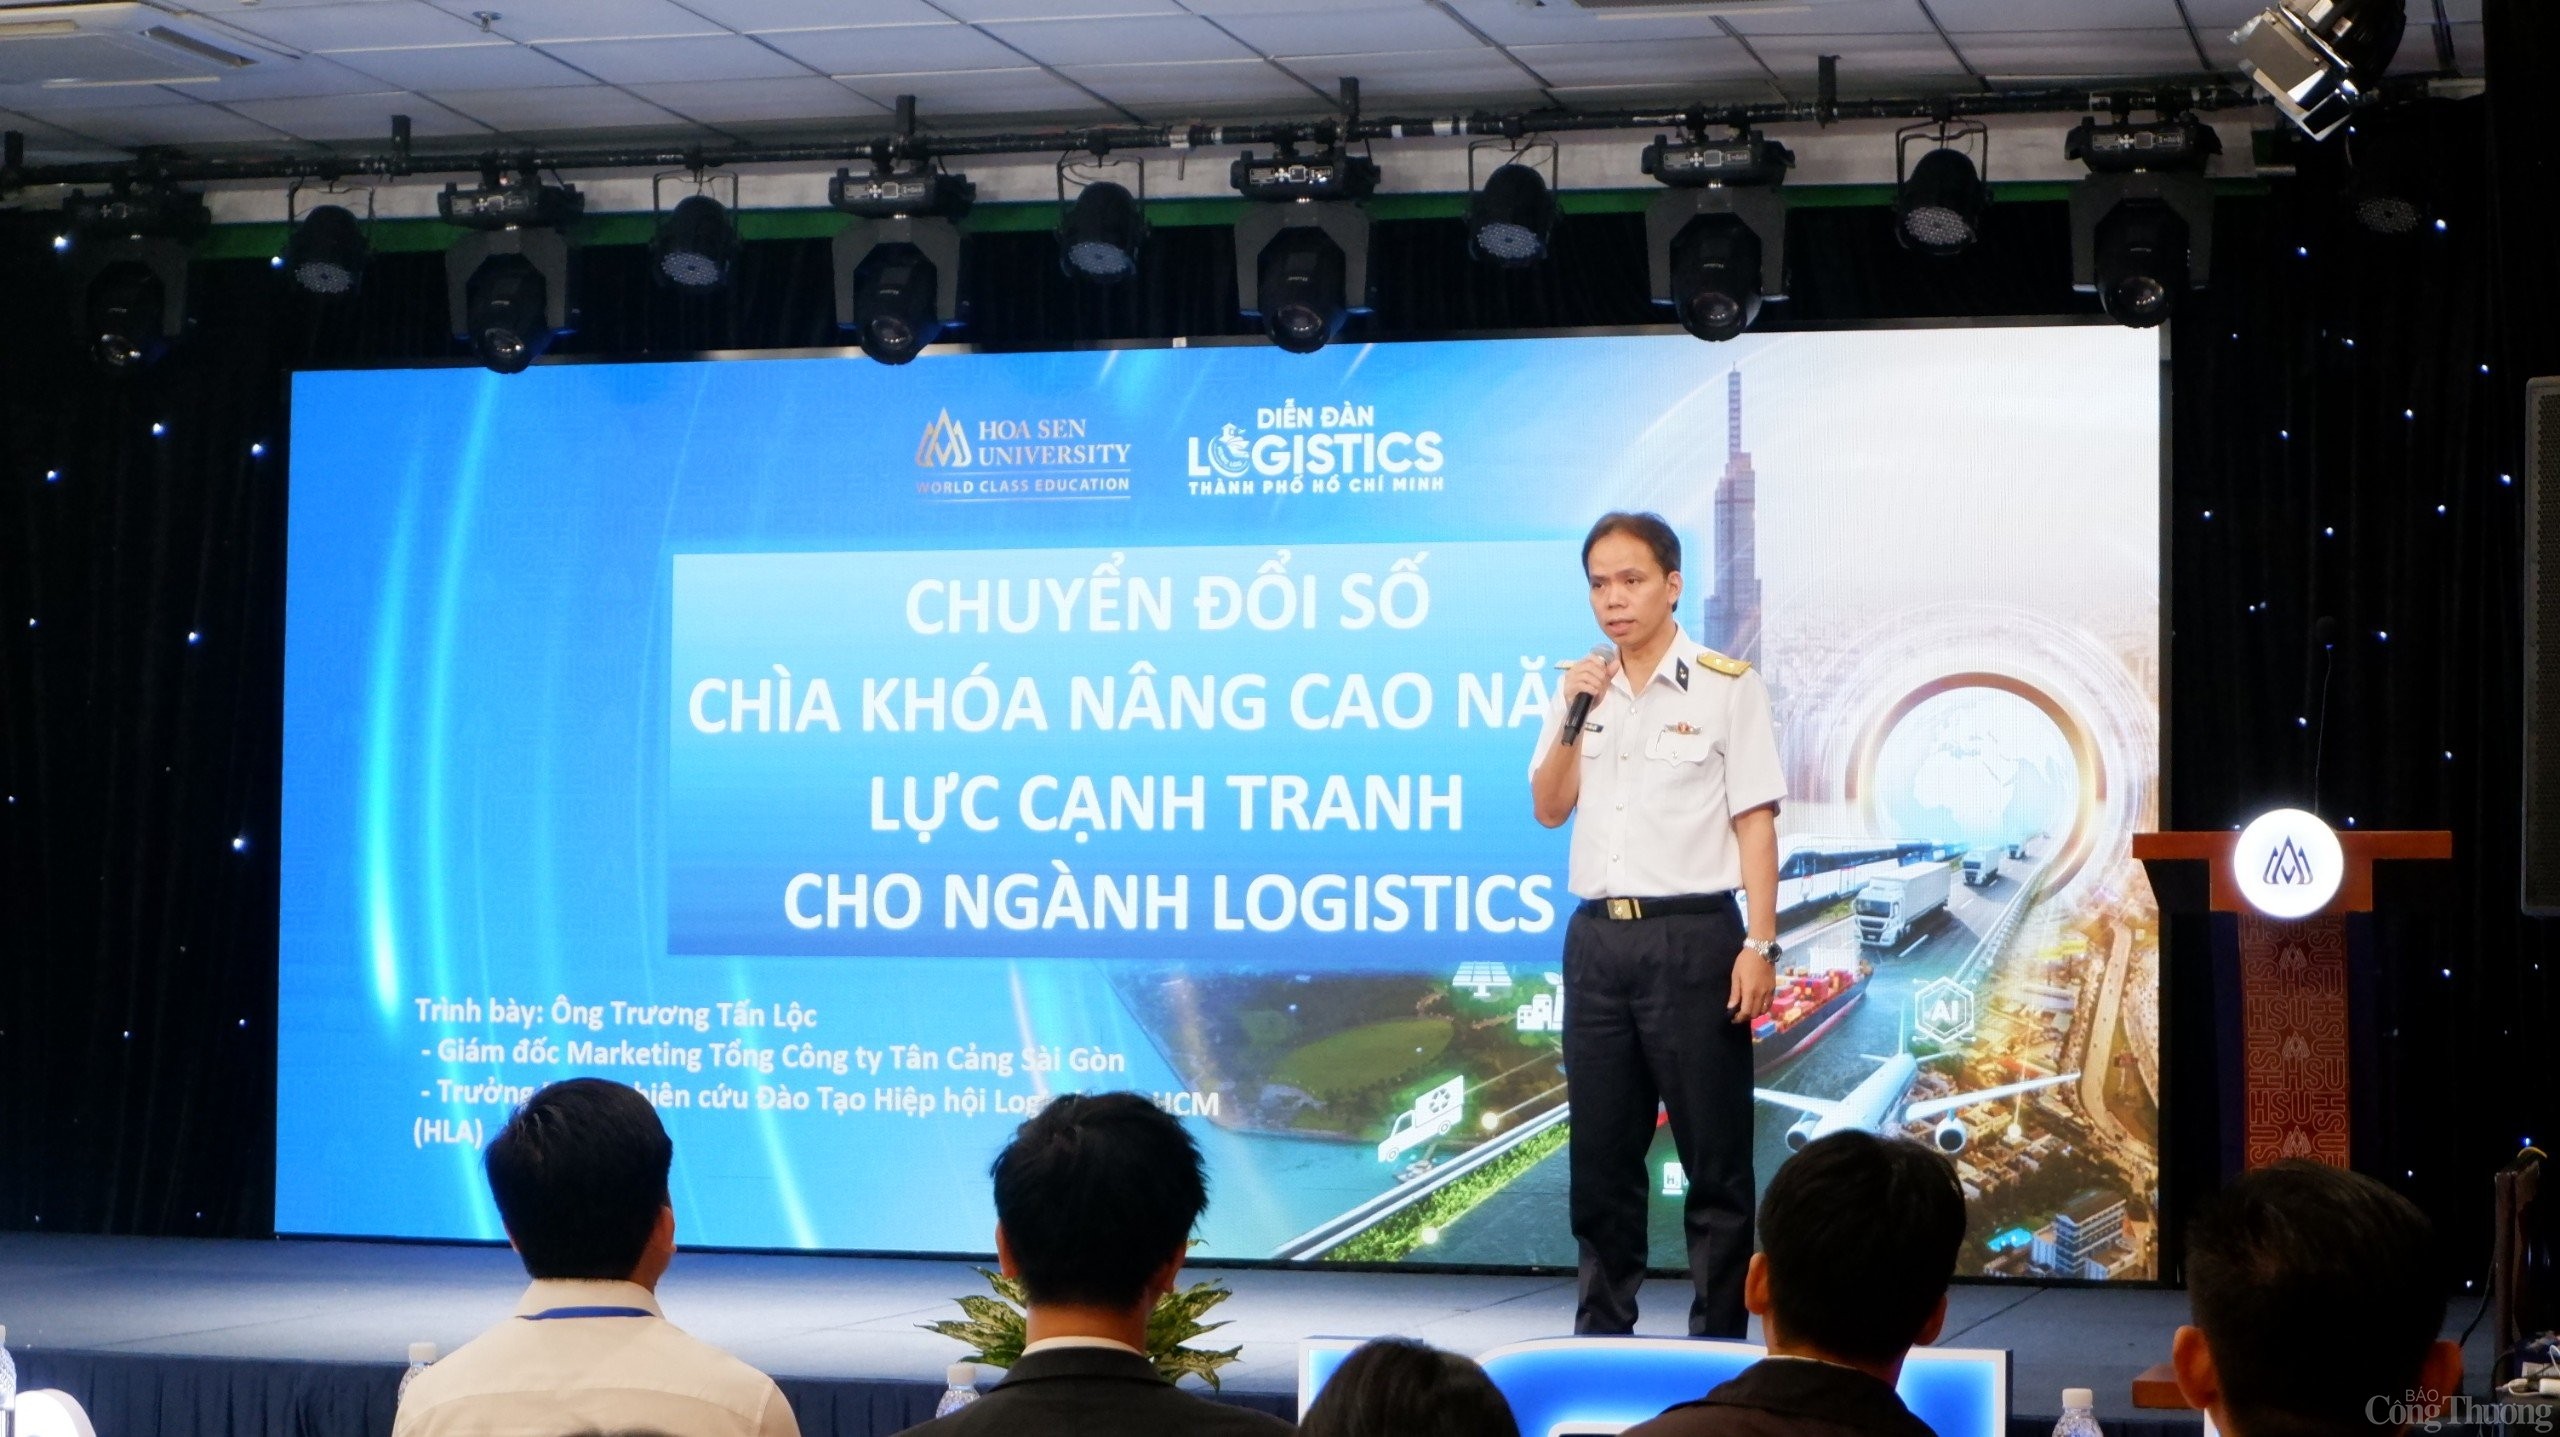 TP. Hồ Chí Minh: Làm thế nào để nâng cao năng lực canh tranh logistics?